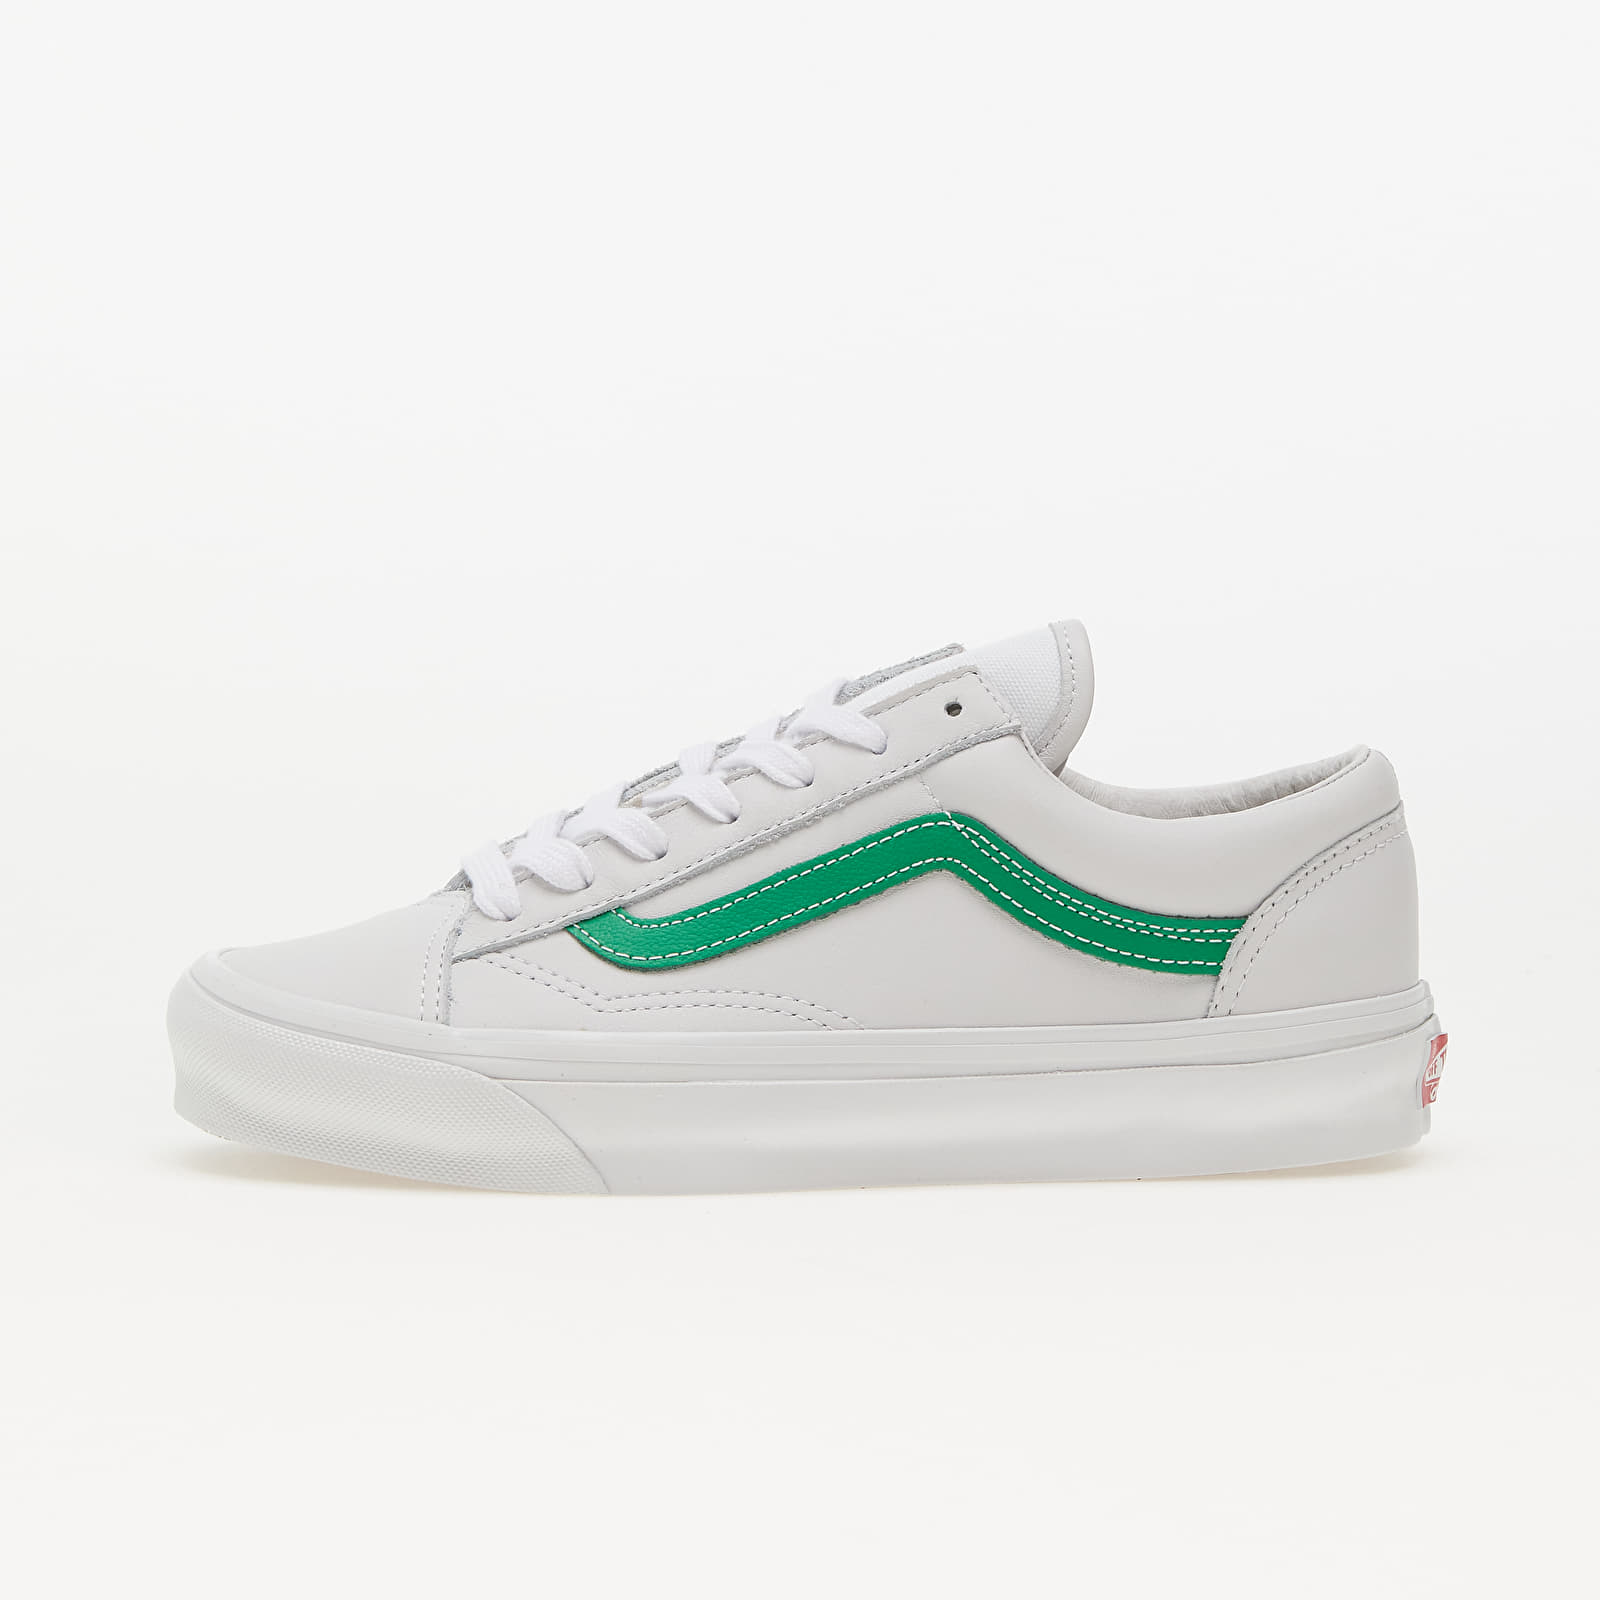 Pánske tenisky a topánky Vans Vault OG Style 36 LX (Leather) Green/ White